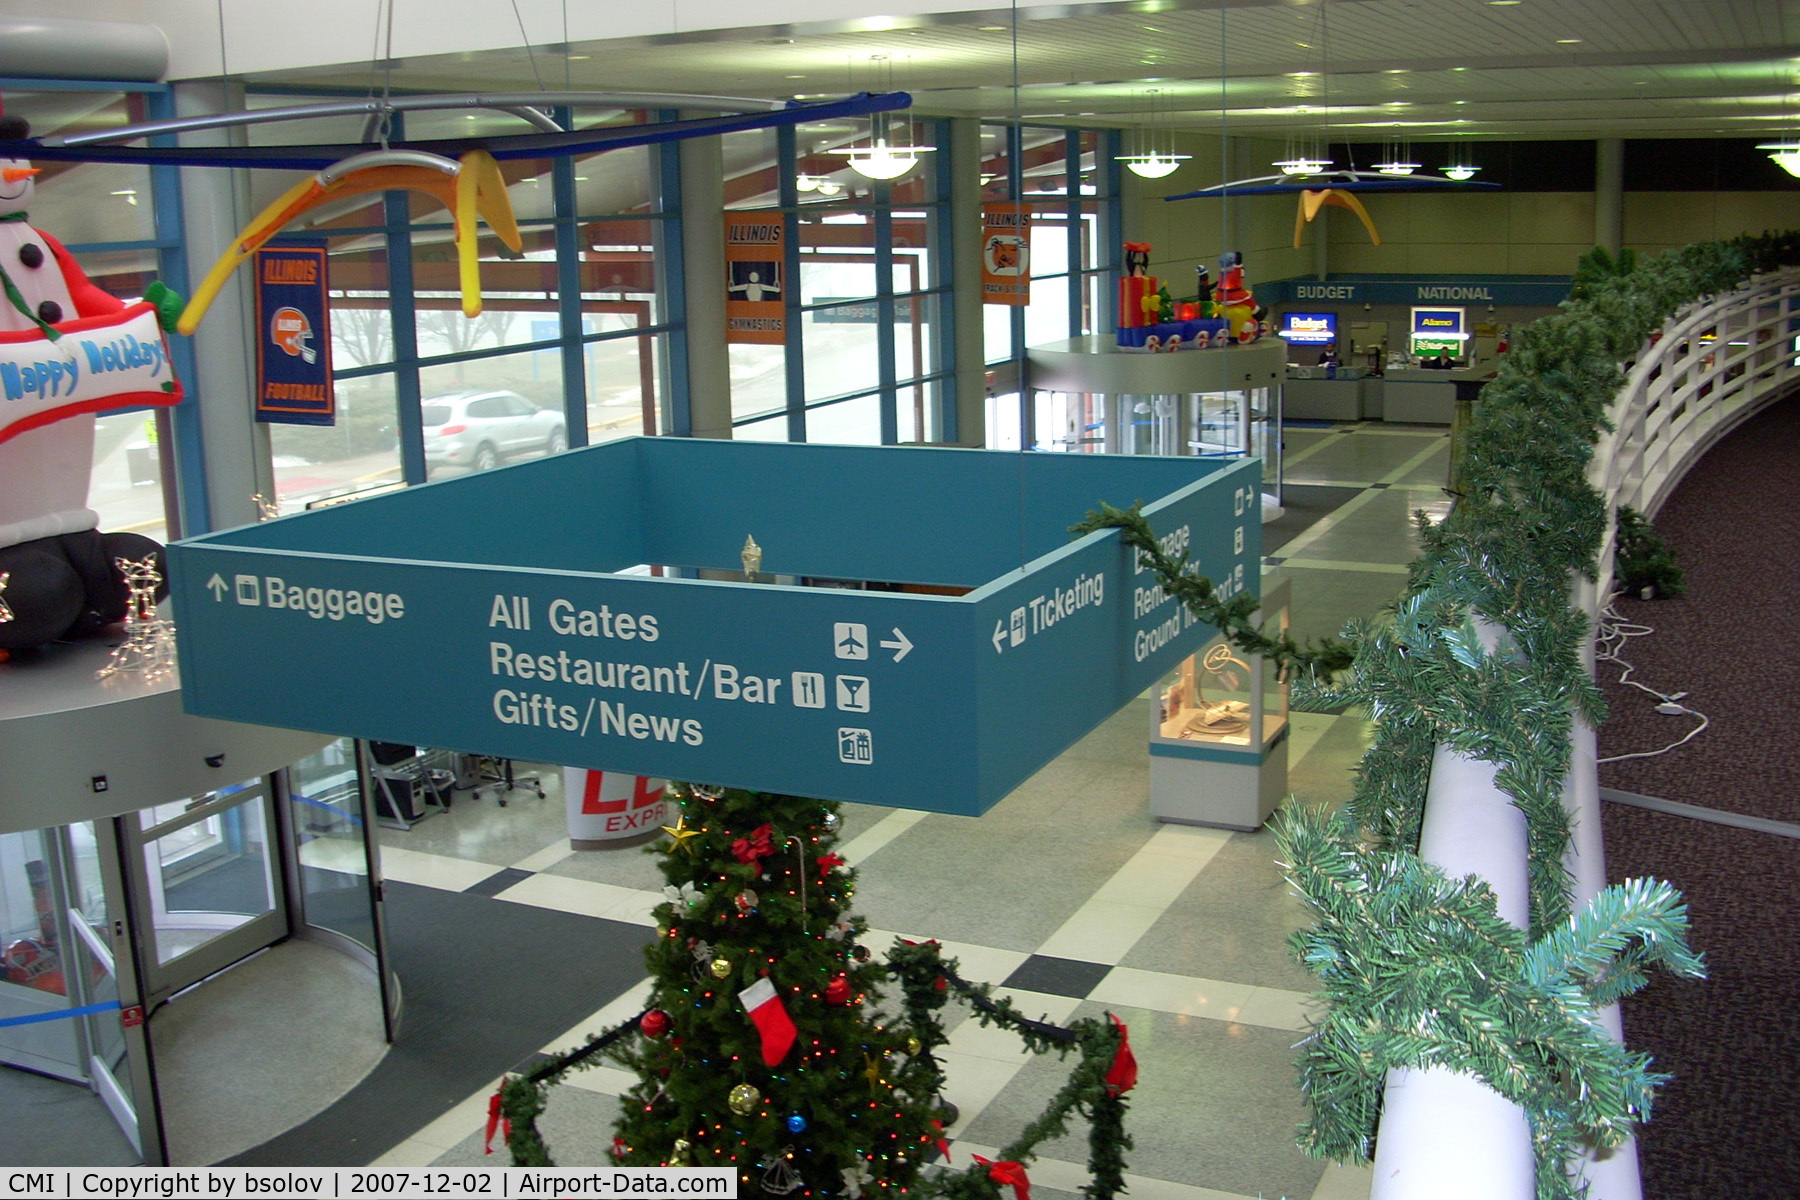 University Of Illinois-willard Airport (CMI) - Arrivals Level at CMI in Champaign, IL